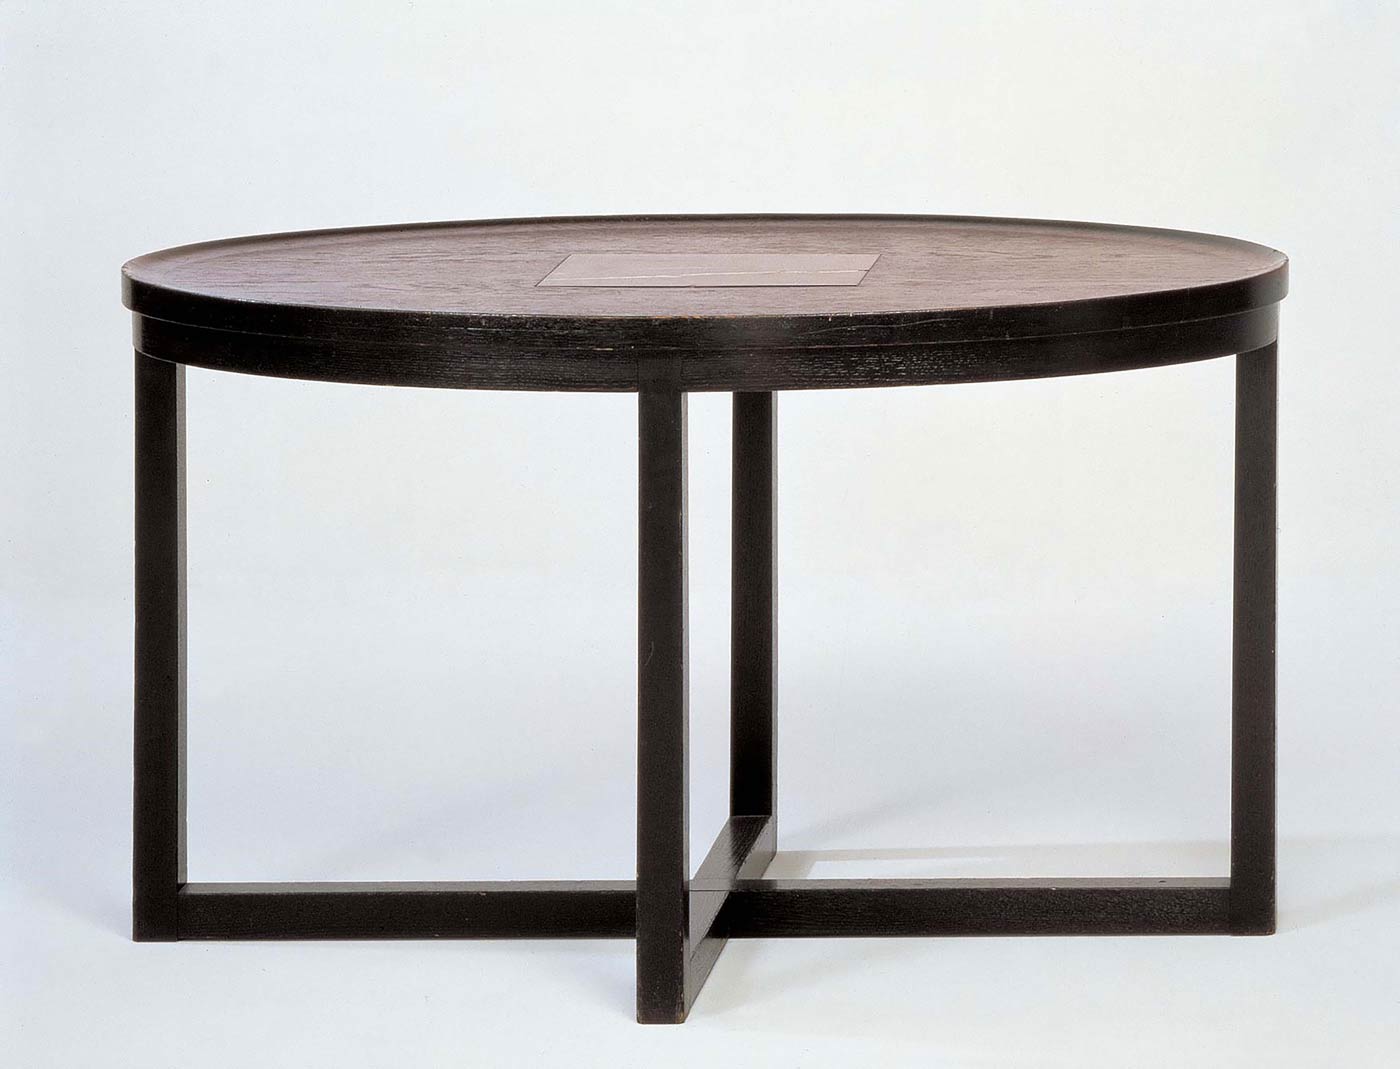 Josef Hoffmann, Table for Dr. Hermann Wittgenstein's apartment (1905) 